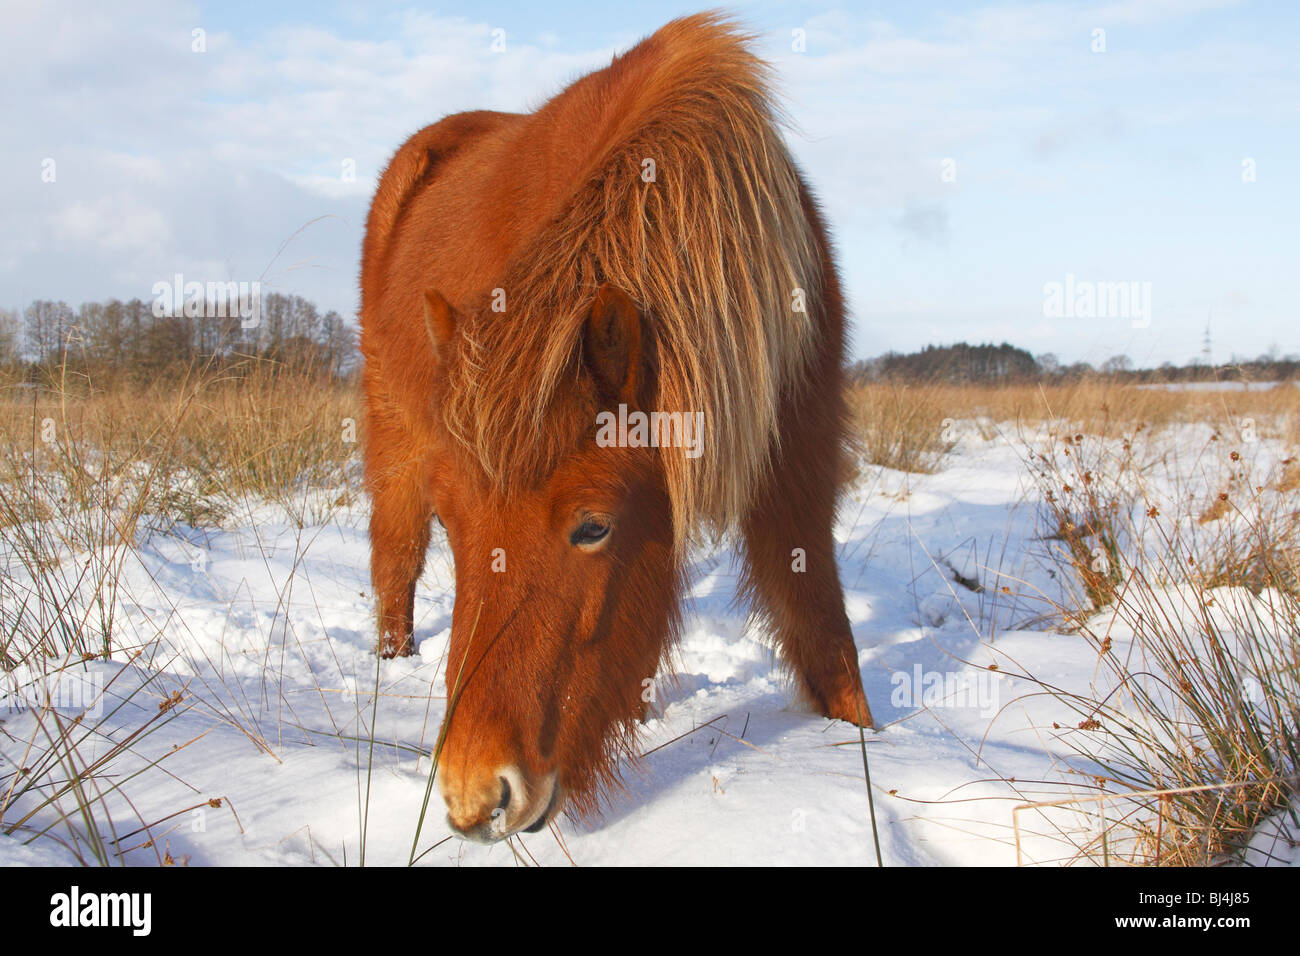 Islandese di cavallo, pony islandese (Equus przewalskii f. caballus) rovistando in inverno nella neve Foto Stock